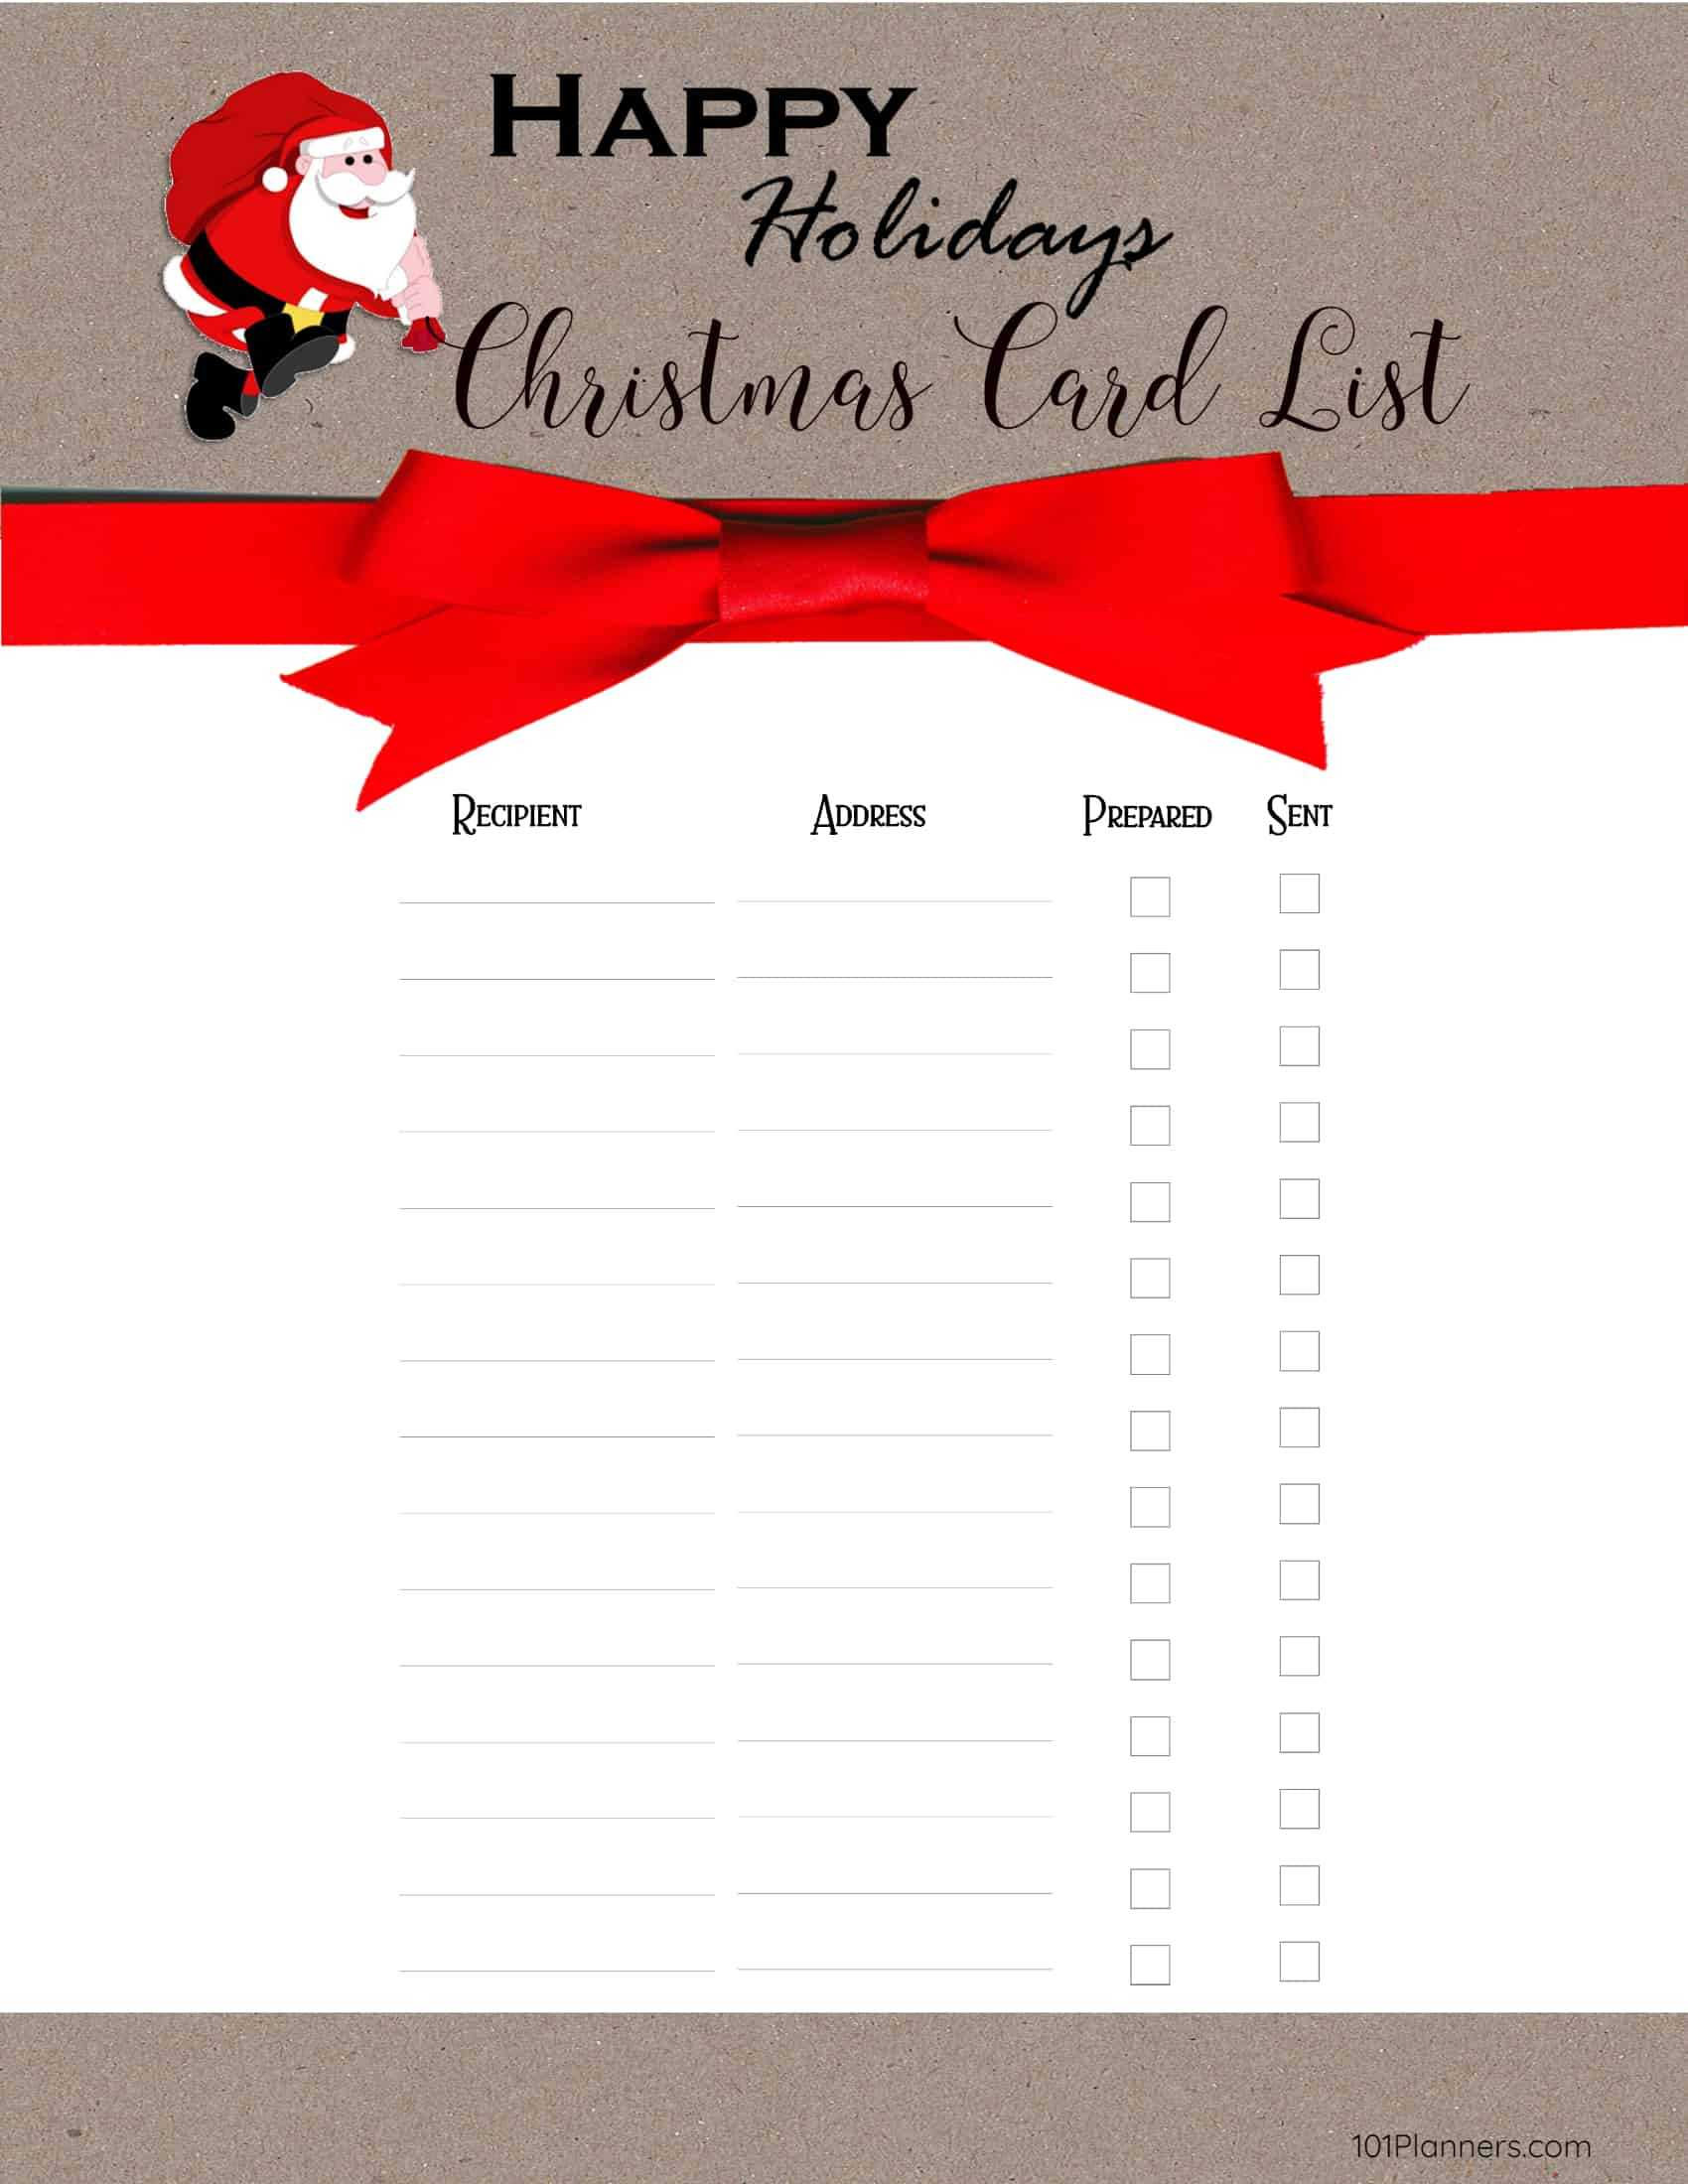 Free Printable Christmas Gift List Template Inside Christmas Card List Template